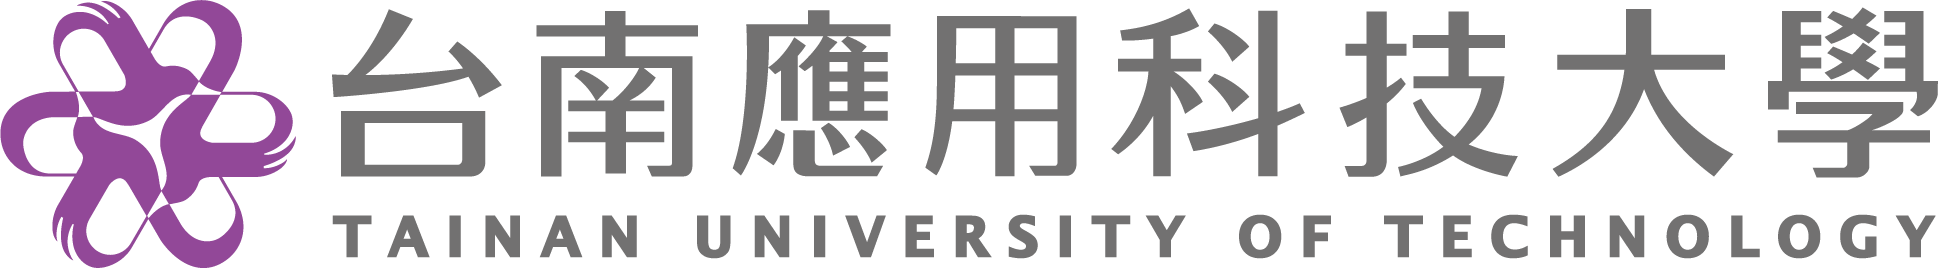 南應大logo